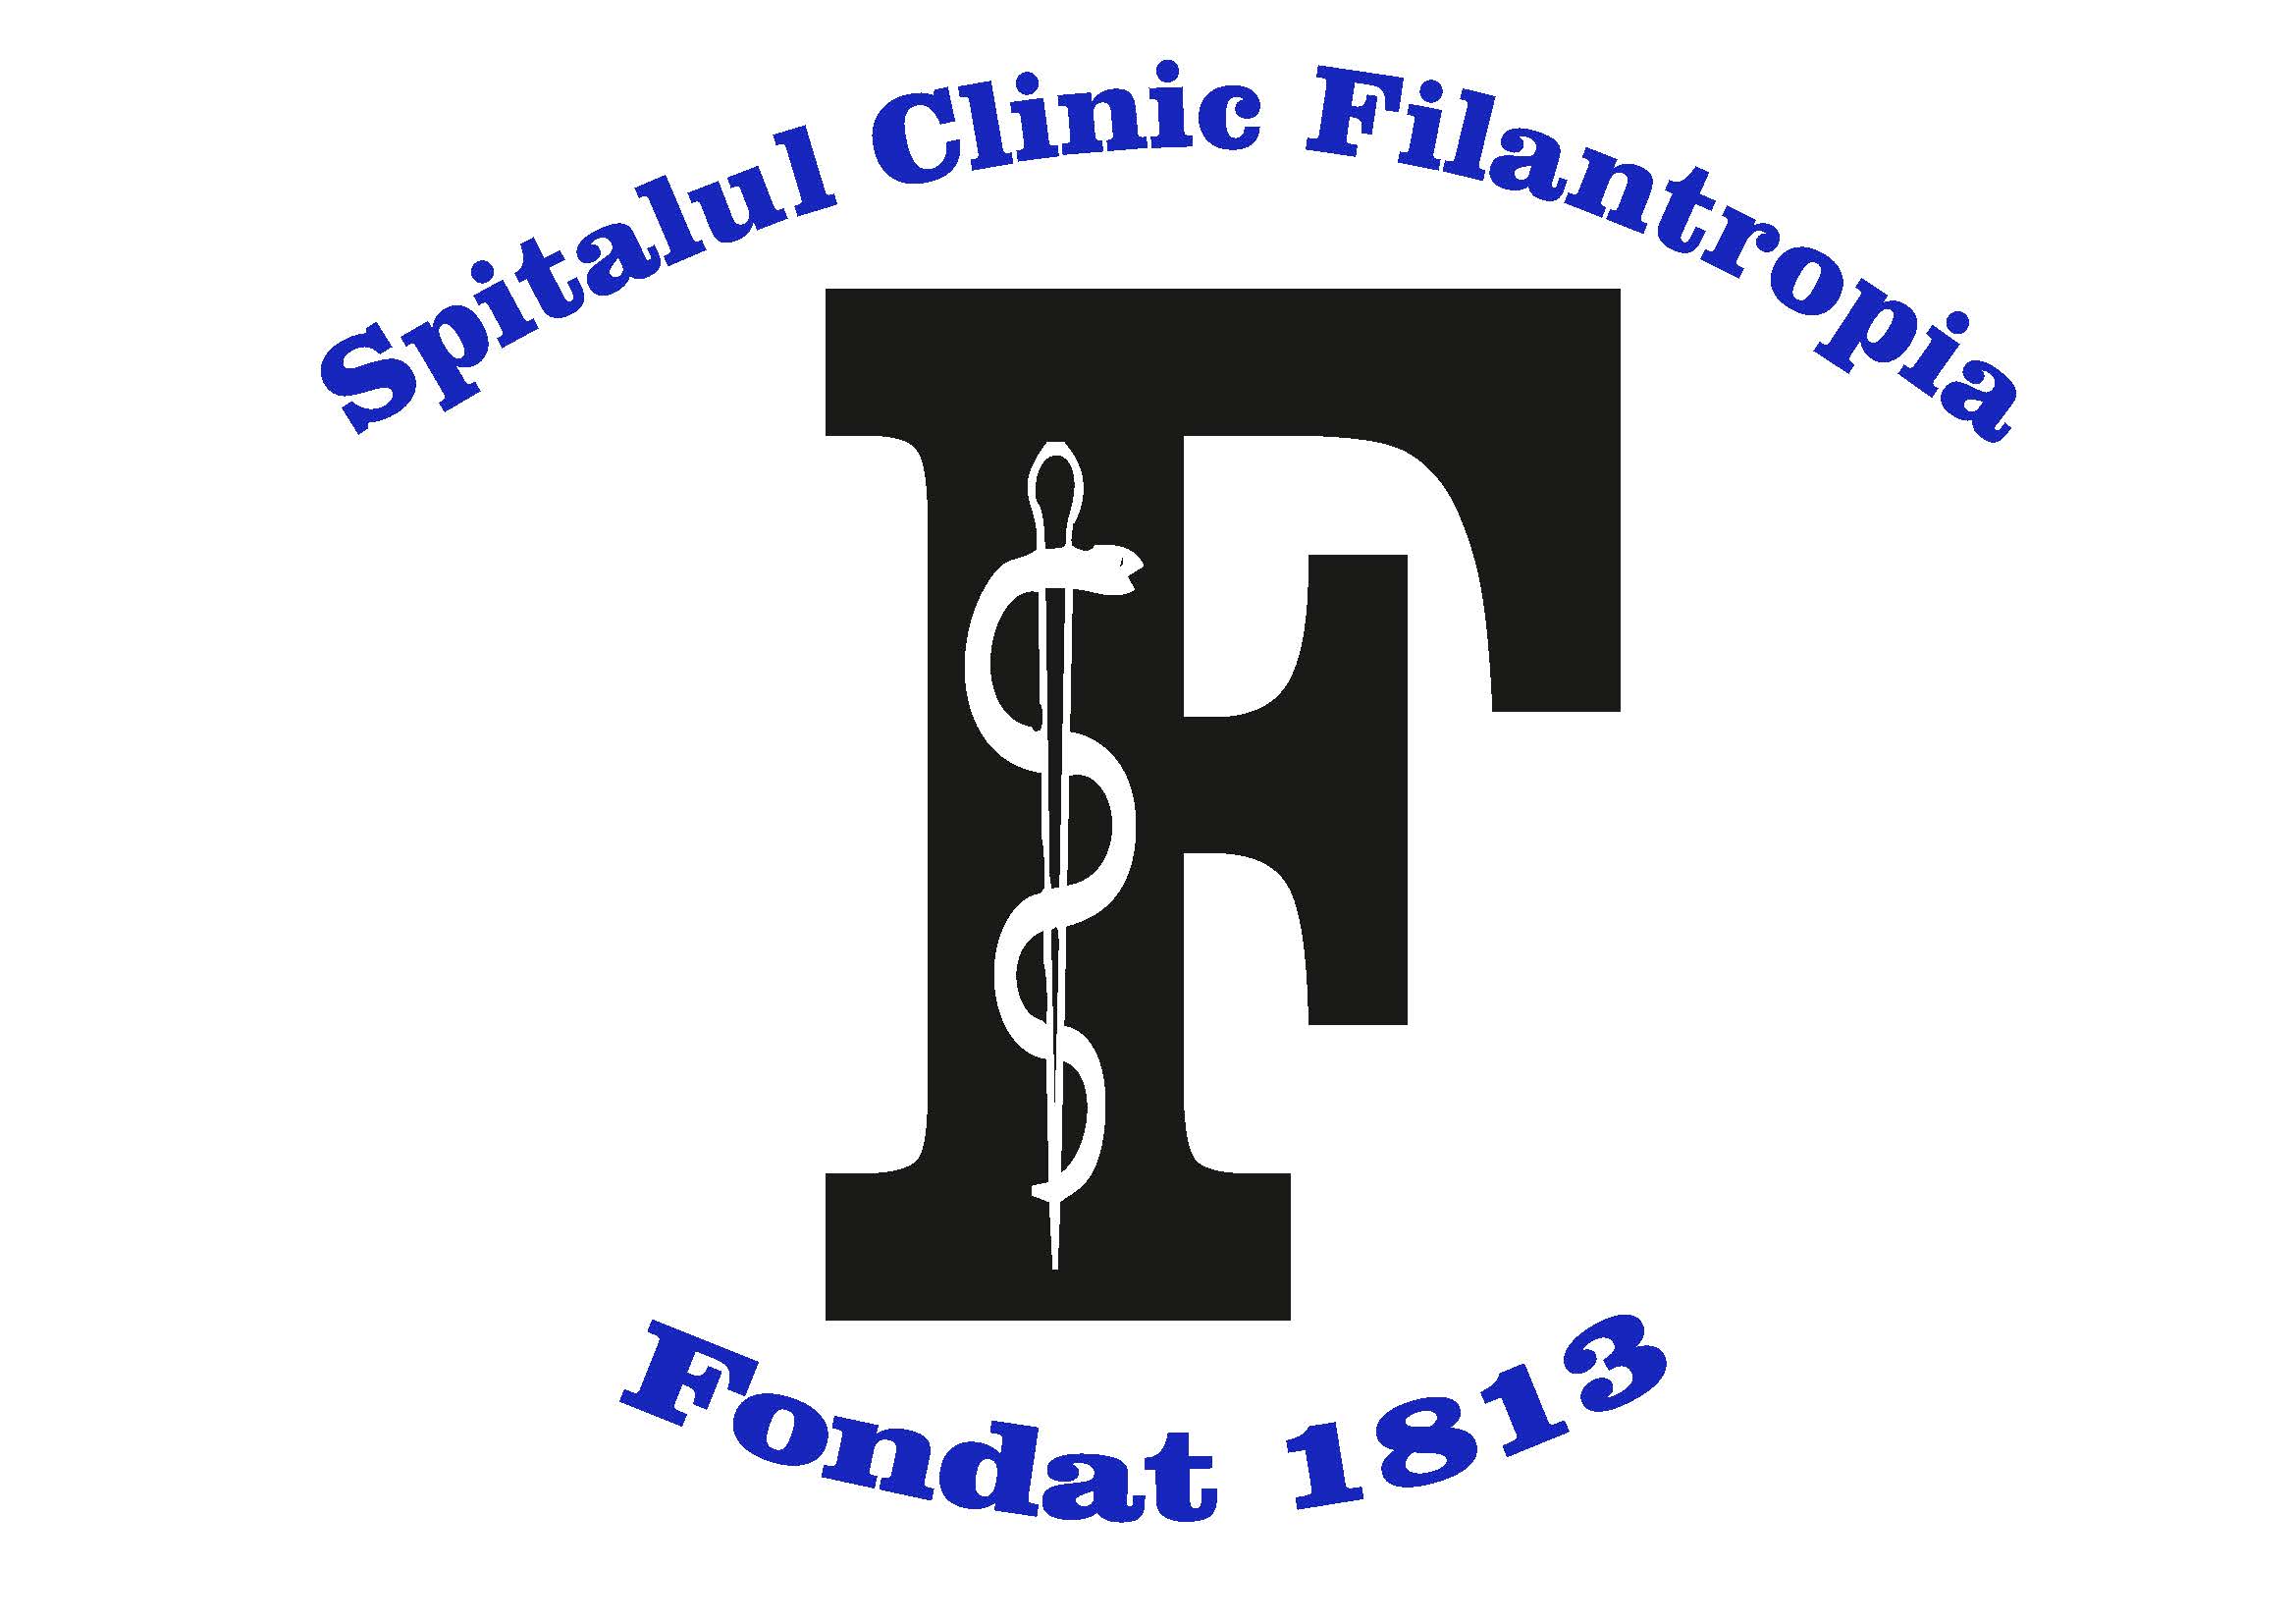 Spitalul Clinic Filantropia